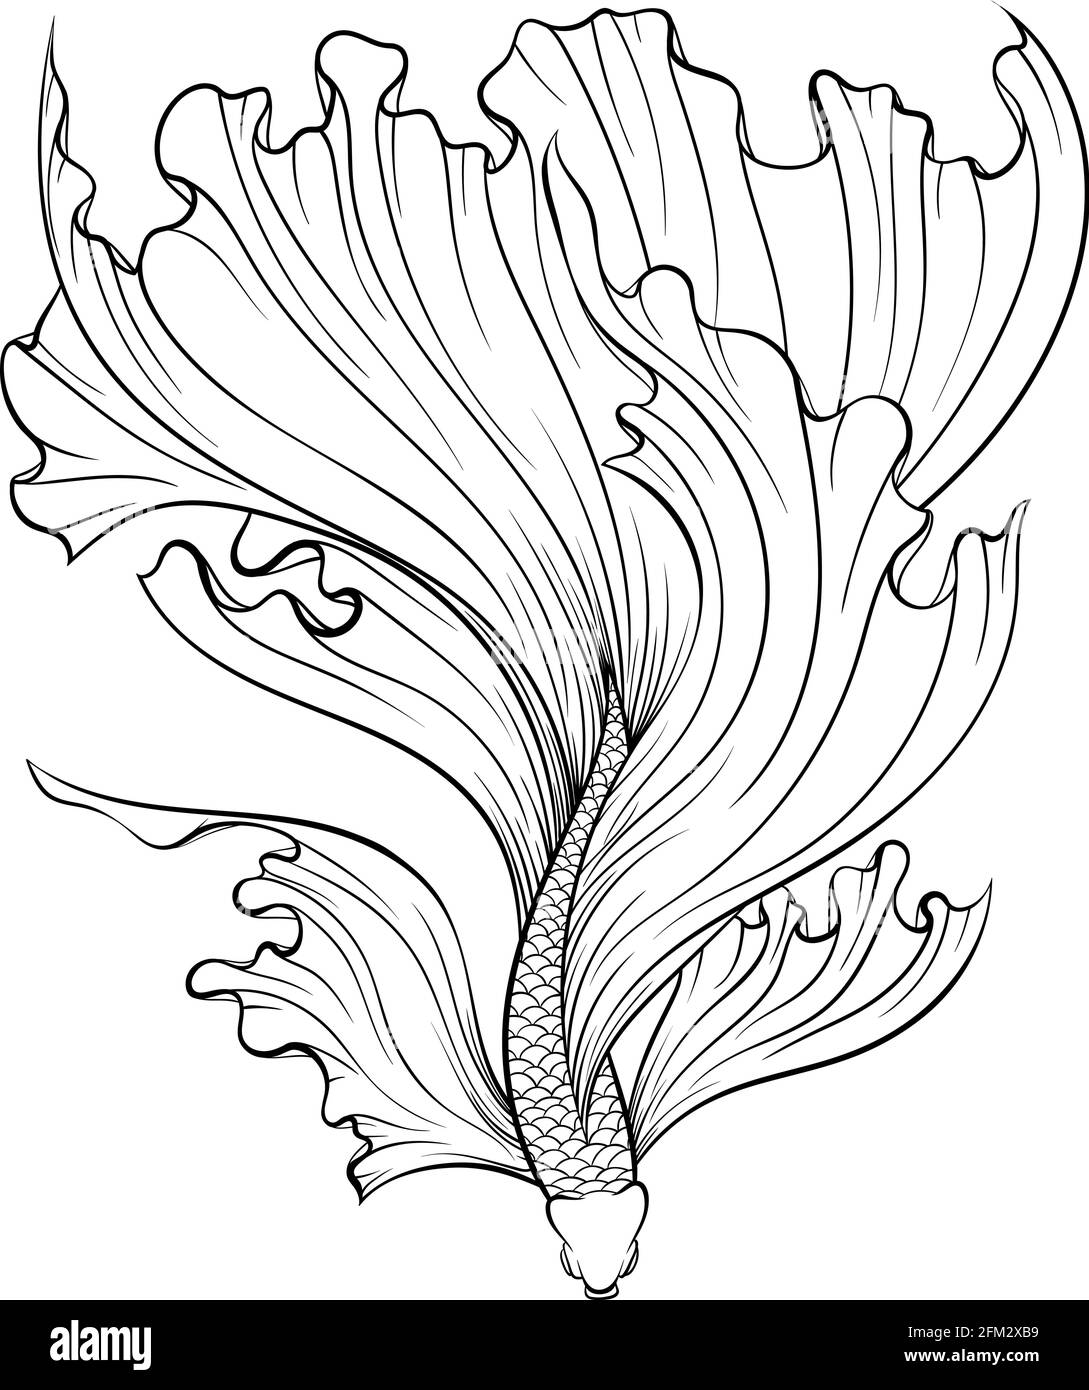 Ligne de poissons de chasse siamois Illustration de Vecteur